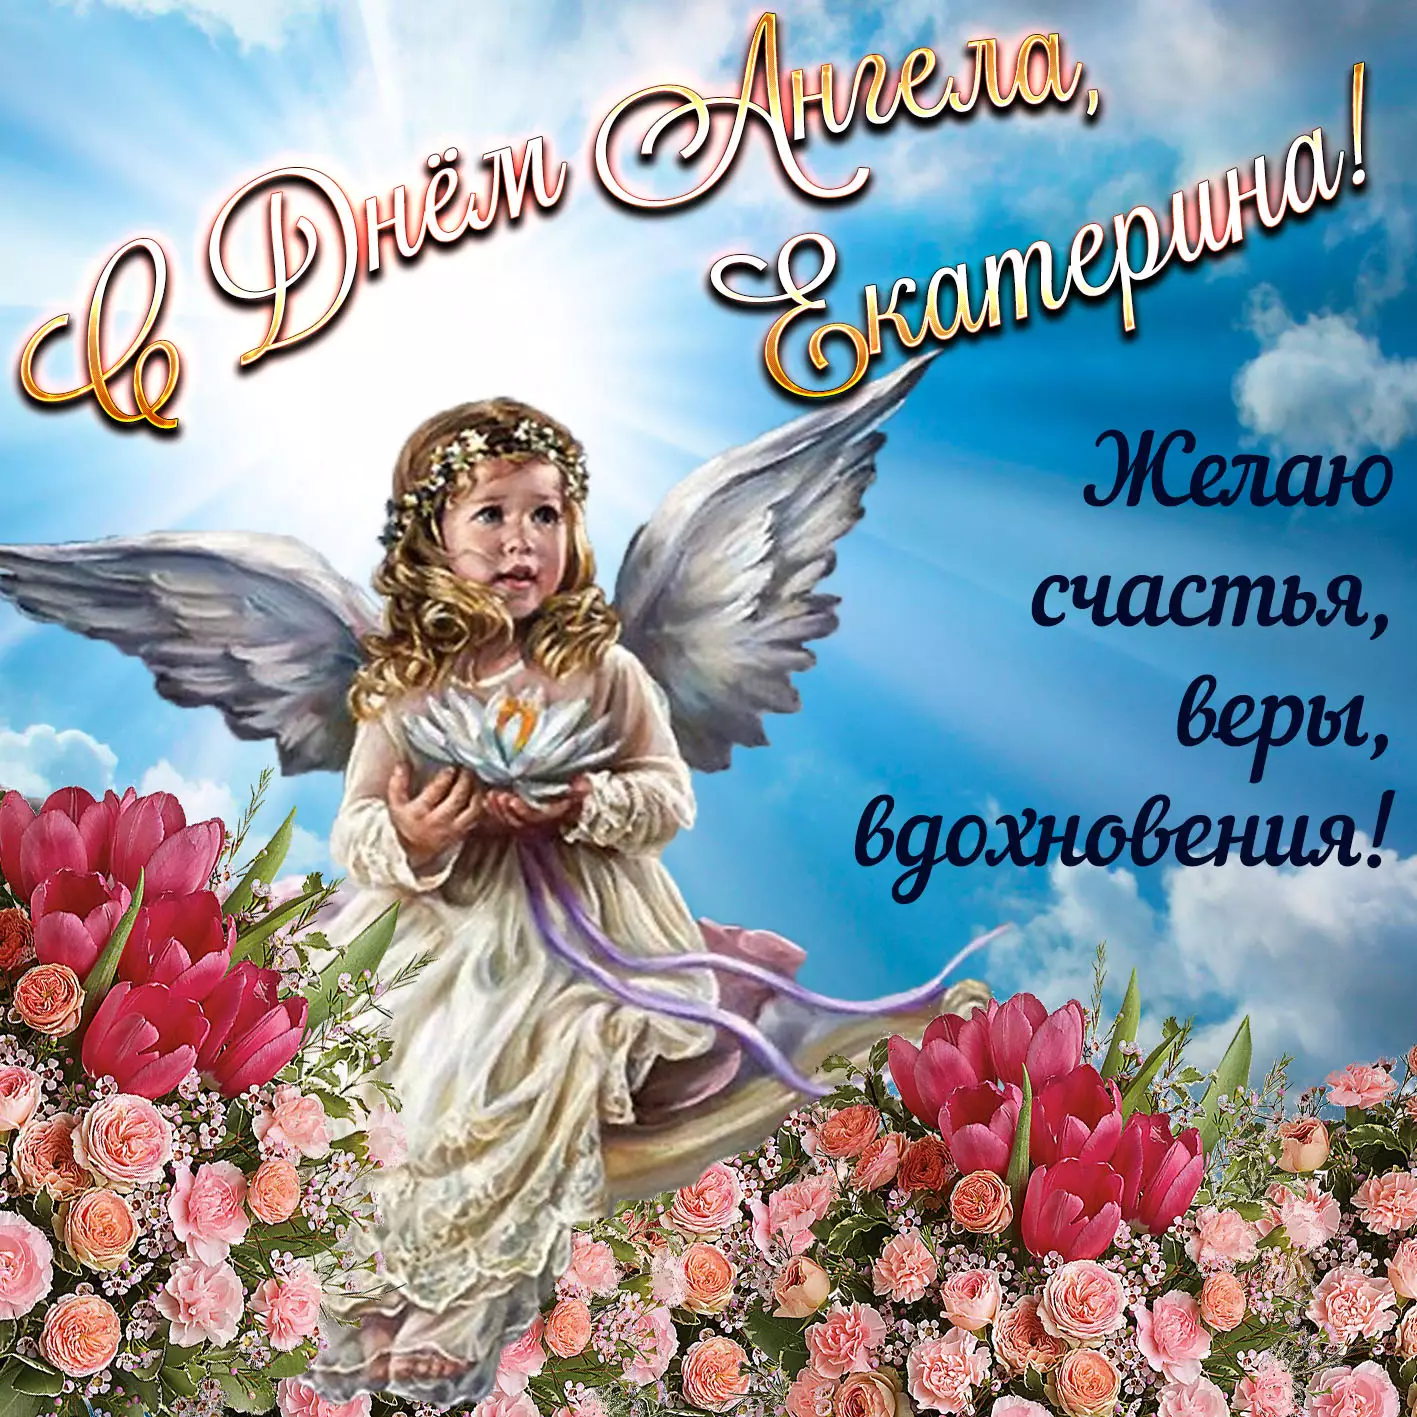 День ангела Екатерины 7 декабря: душевные поздравления с именинами в стихах и открытках